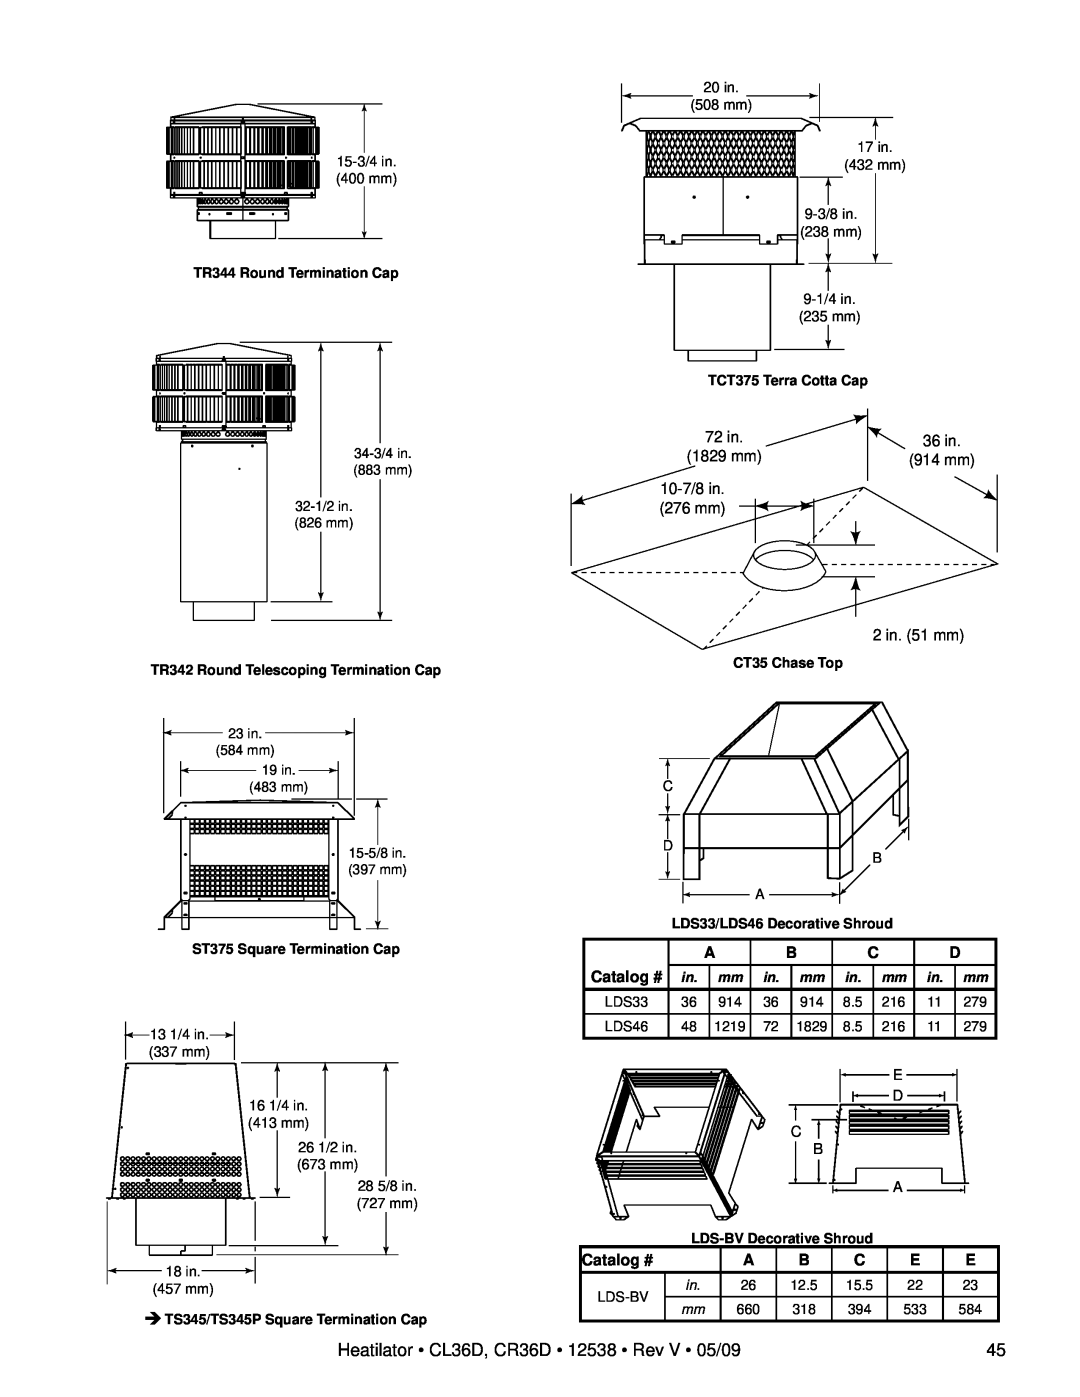 Heatiator owner manual Heatilator CL36D, CR36D 12538 Rev V 05/09, Catalog # 